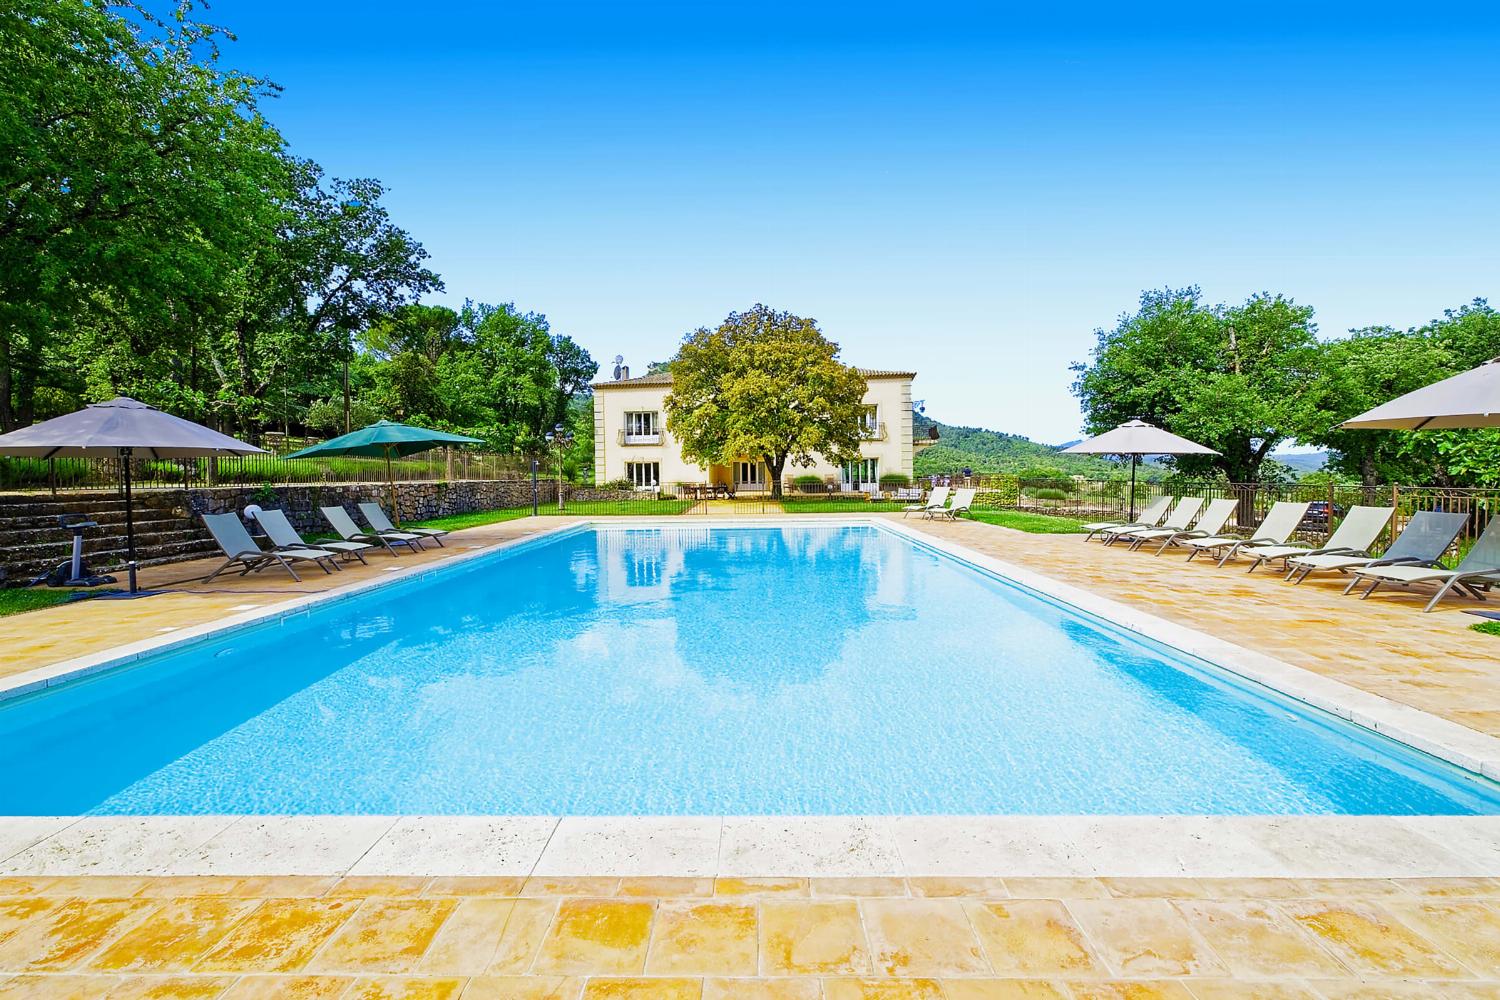 Location de vacances en Provence avec piscine priveé